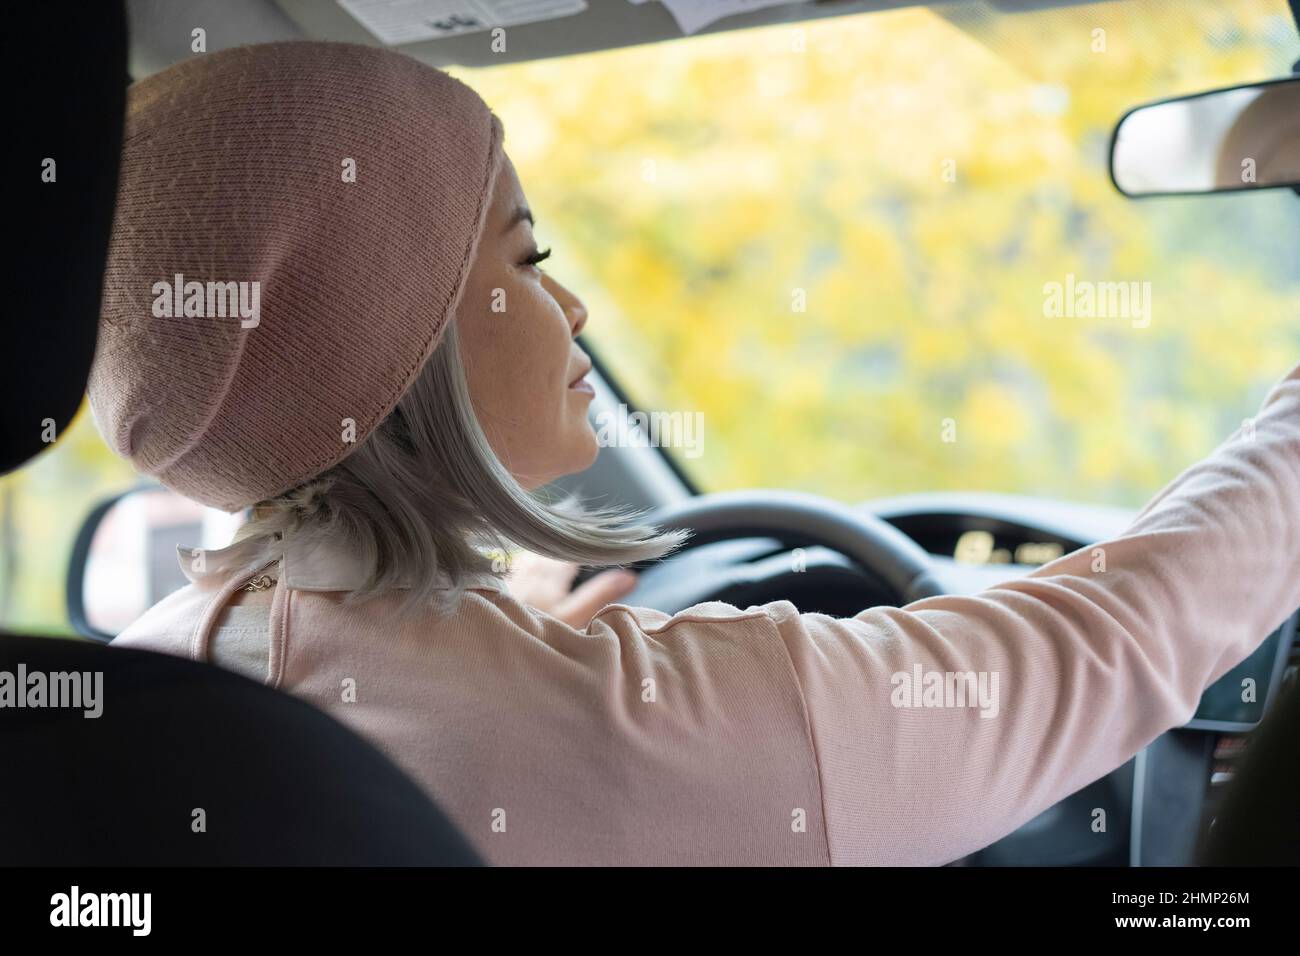 Charmante femme blonde asiatique en voiture. Femme asiatique mature en lunettes regardant le miroir tenant un volant. Femme asiatique blonde d'âge moyen dans la voiture. Femme sur la route. Concept d'entreprise. Banque D'Images